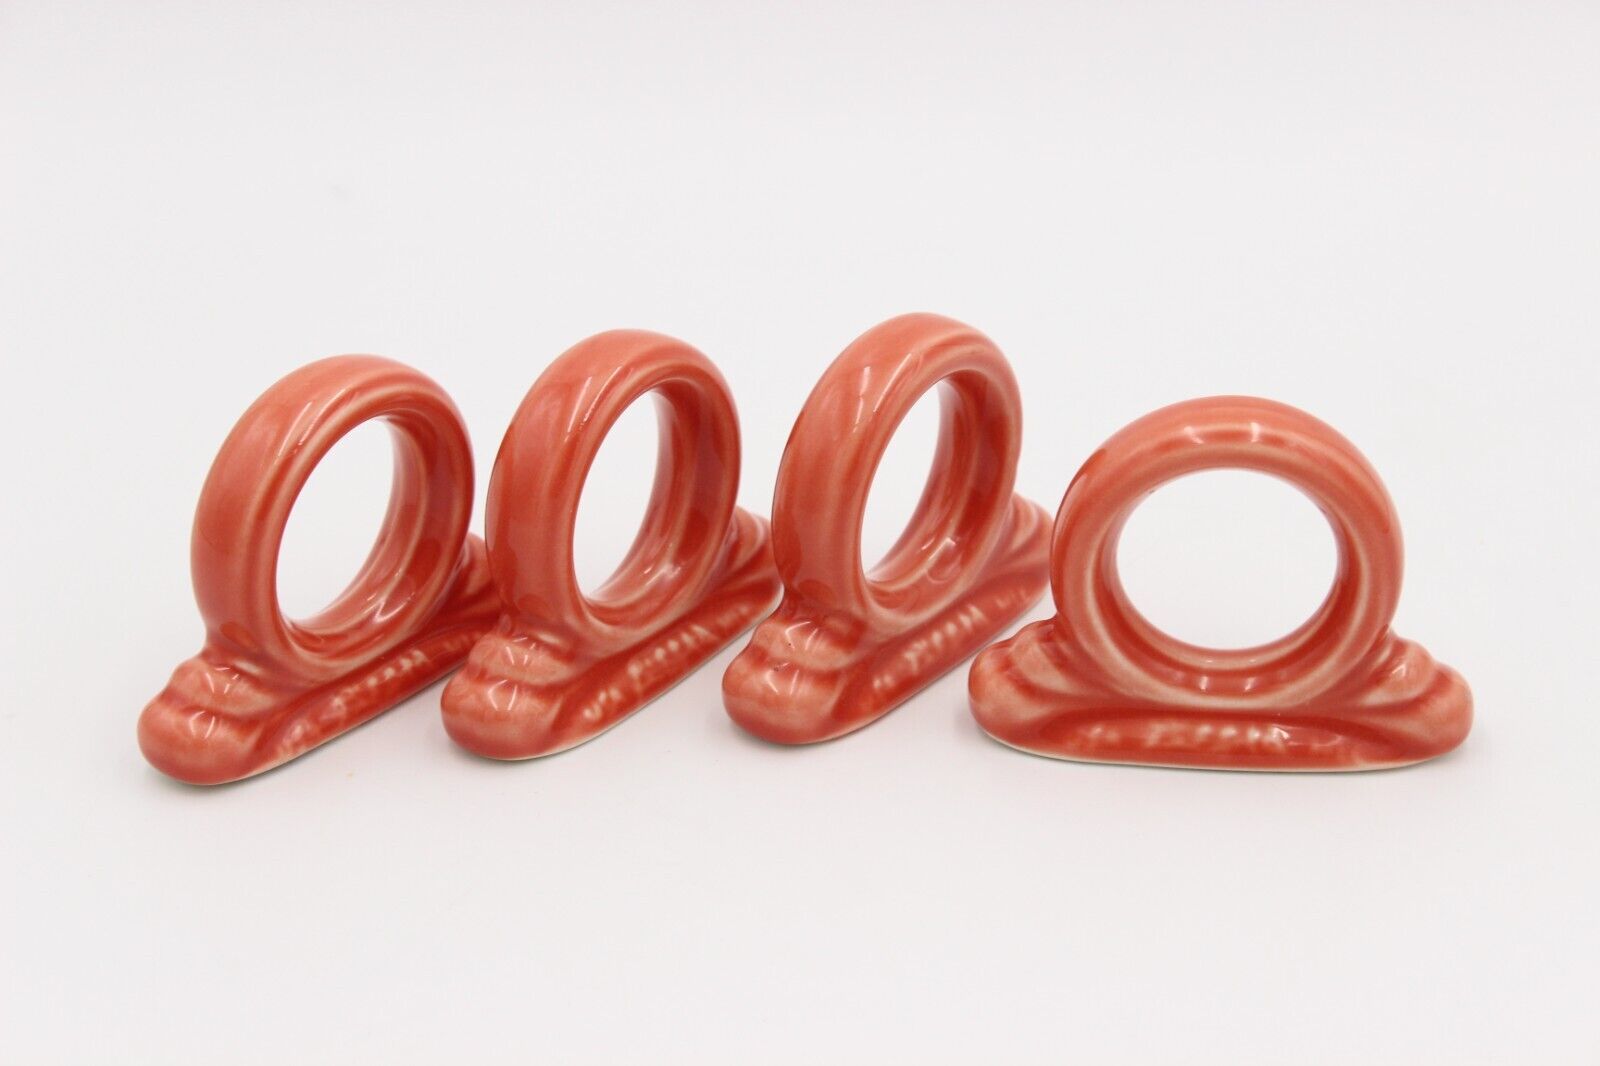 FIESTA Napkin Rings (Set of 4) Persimmon Ceramic Napkin Holders HLC